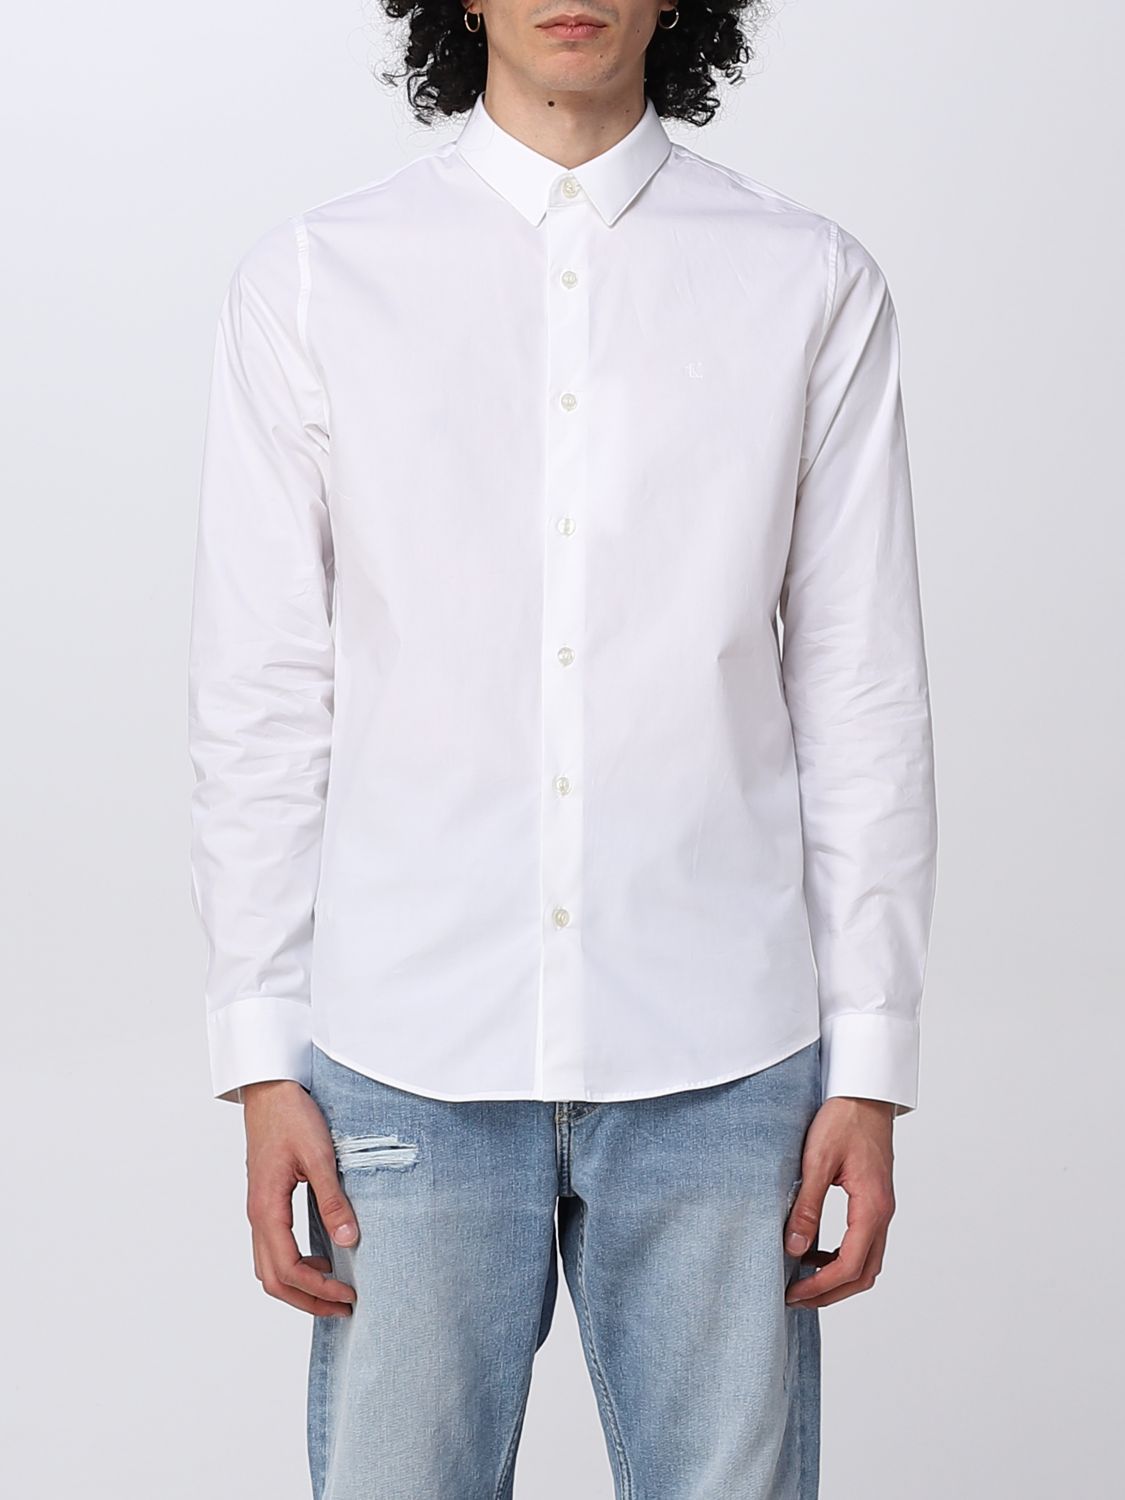 CALVIN KLEIN JEANS: shirt for man - White | Calvin Klein Jeans shirt ...